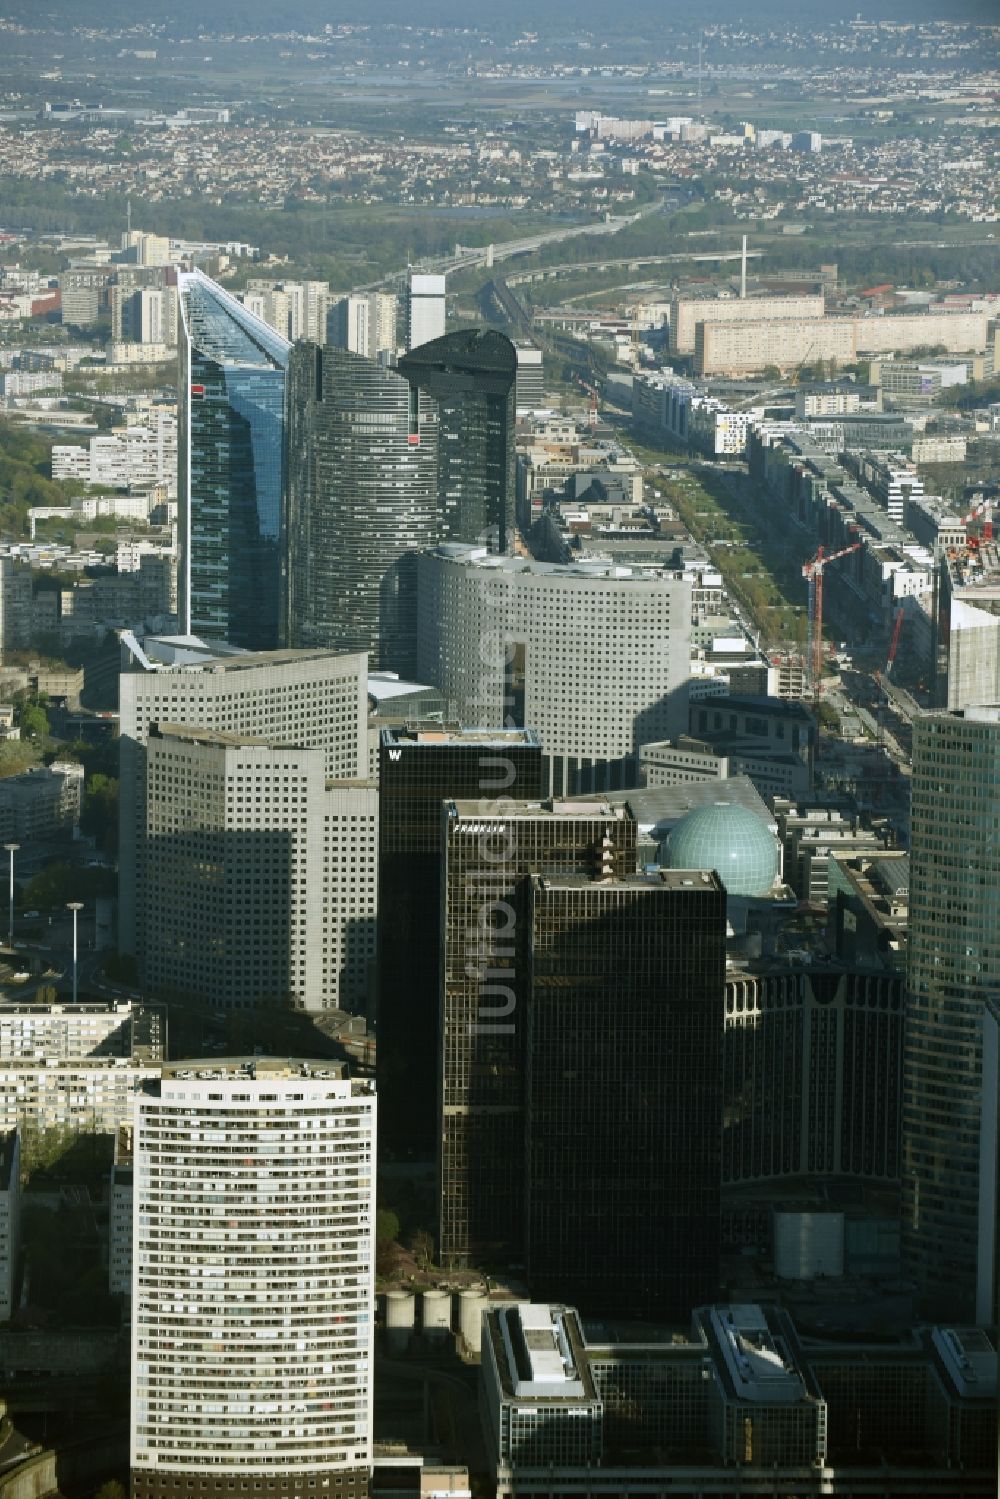 Paris Puteaux aus der Vogelperspektive: Stadtzentrum mit der Skyline im Innenstadtbereich in Paris Nanterre in Ile-de-France, Frankreich